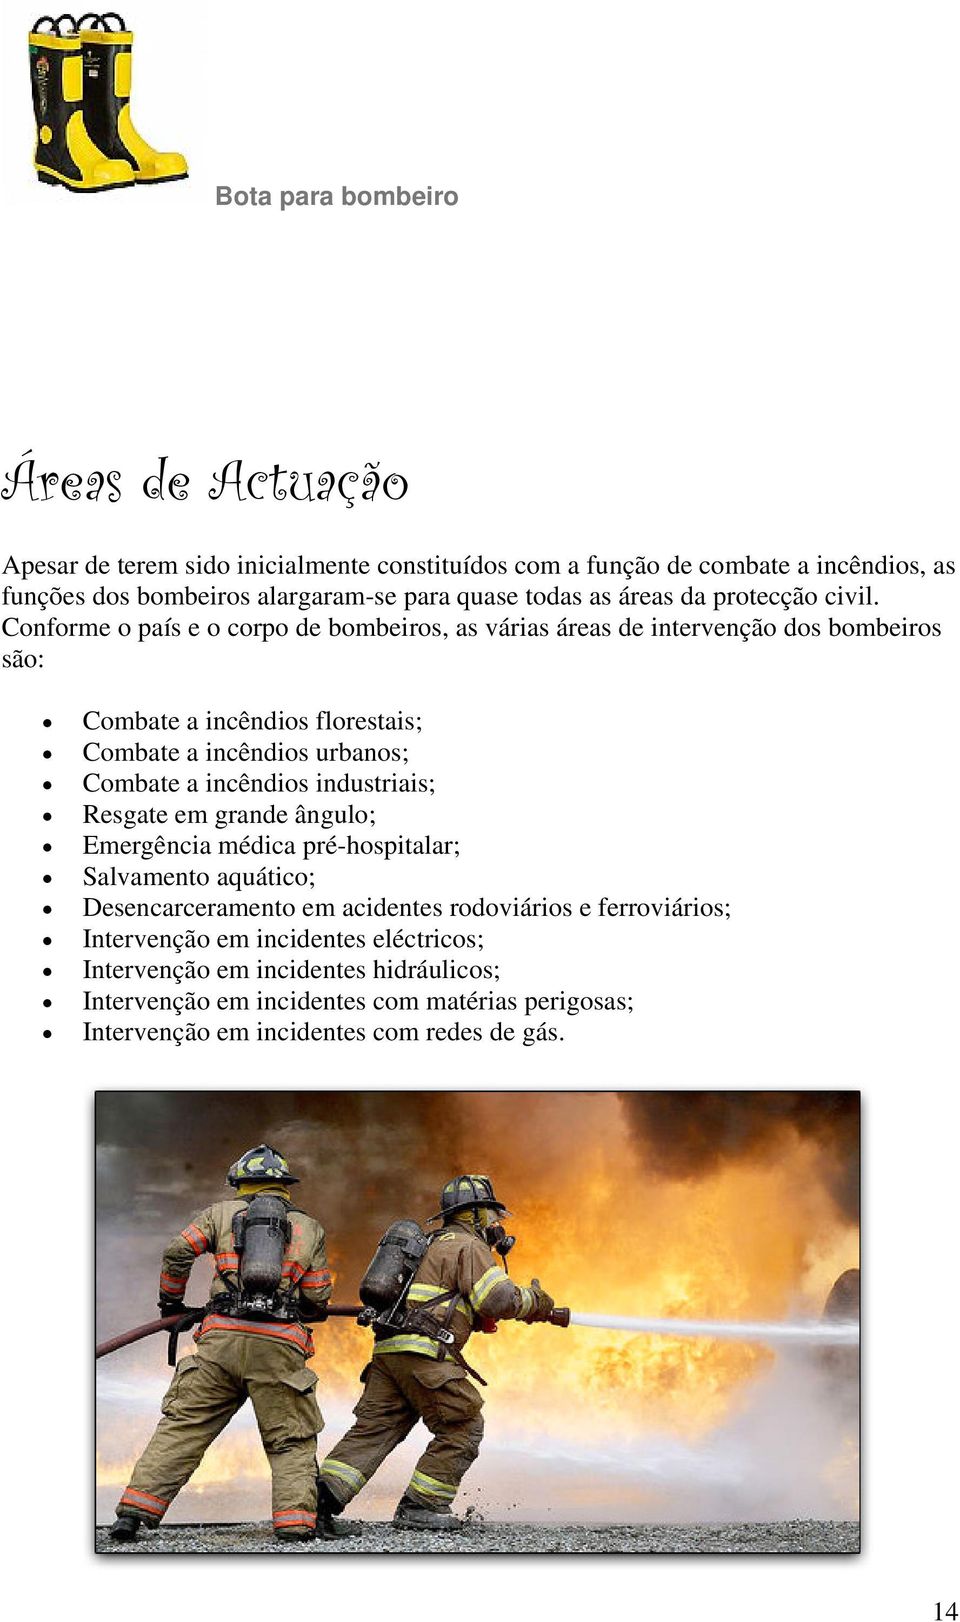 Conforme o país e o corpo de bombeiros, as várias áreas de intervenção dos bombeiros são: Combate a incêndios florestais; Combate a incêndios urbanos; Combate a incêndios